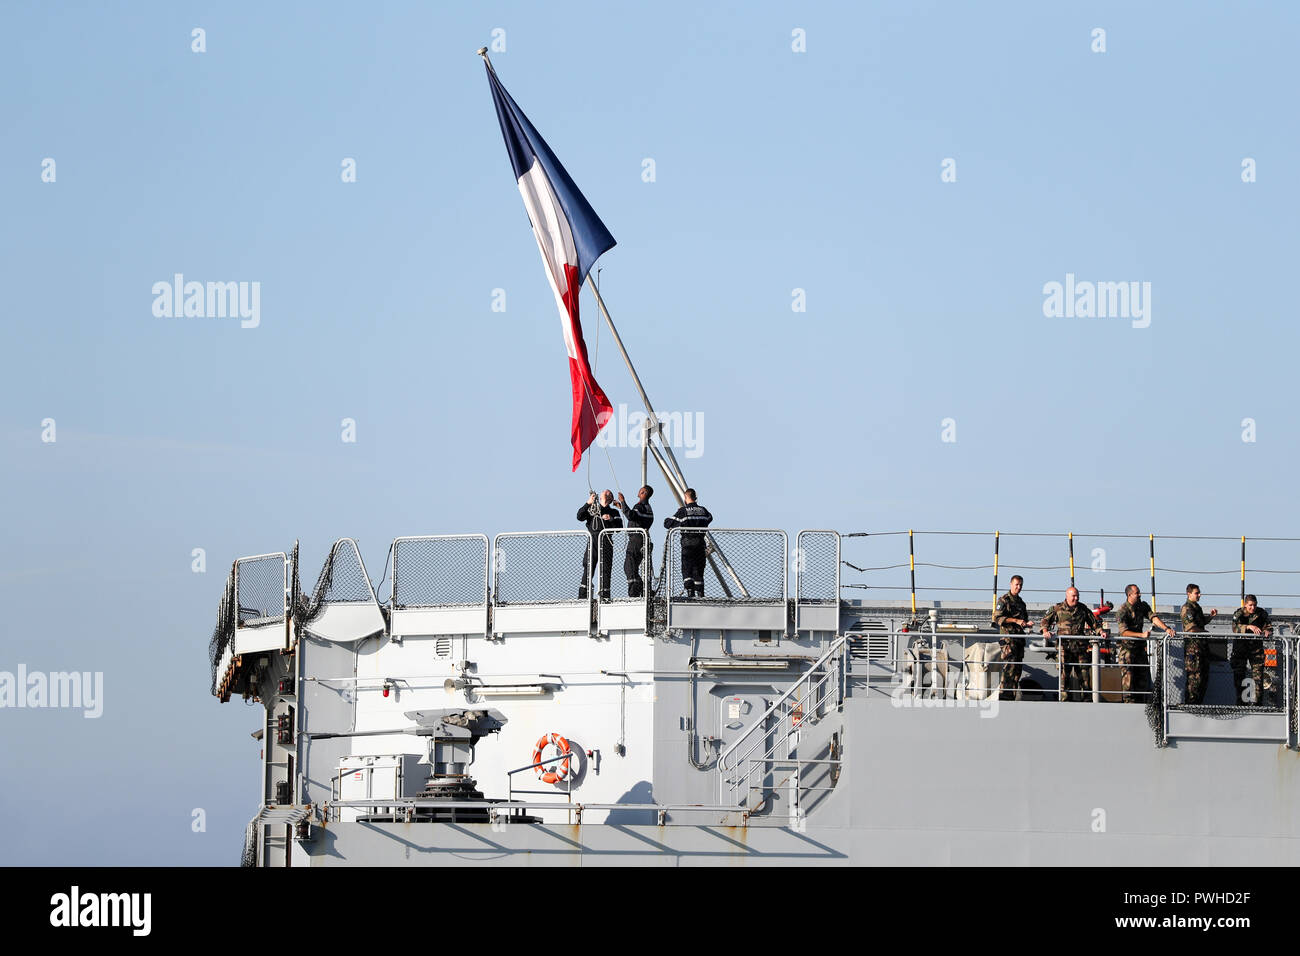 Die französische Trikolore ist Gehisst, wie die Französische Marine amphibisches Schiff und Hubschrauber Carrier, FS Dixmude, in Portsmouth Hafen ankommt. Stockfoto